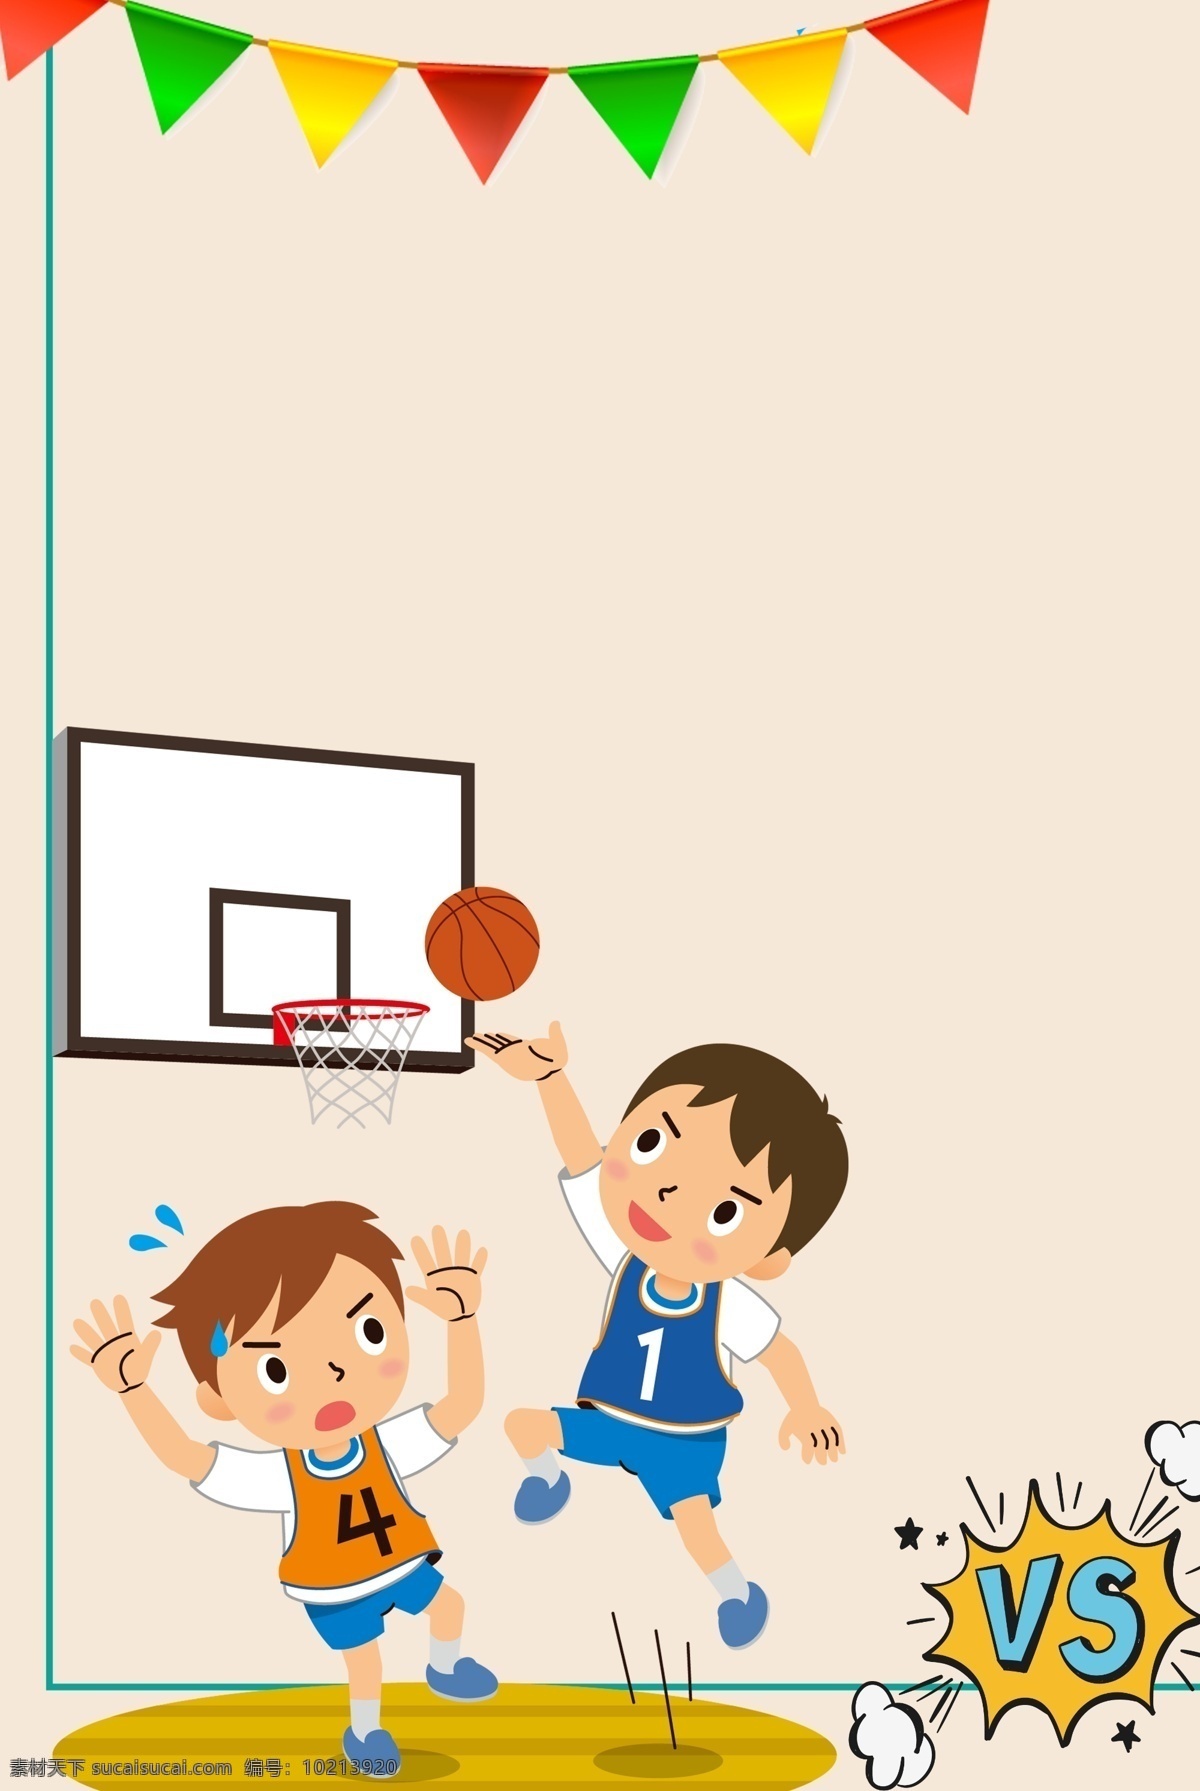 场 激烈 篮球 比赛 卡通 手绘 篮球比赛 灌篮 防守 进攻 投篮